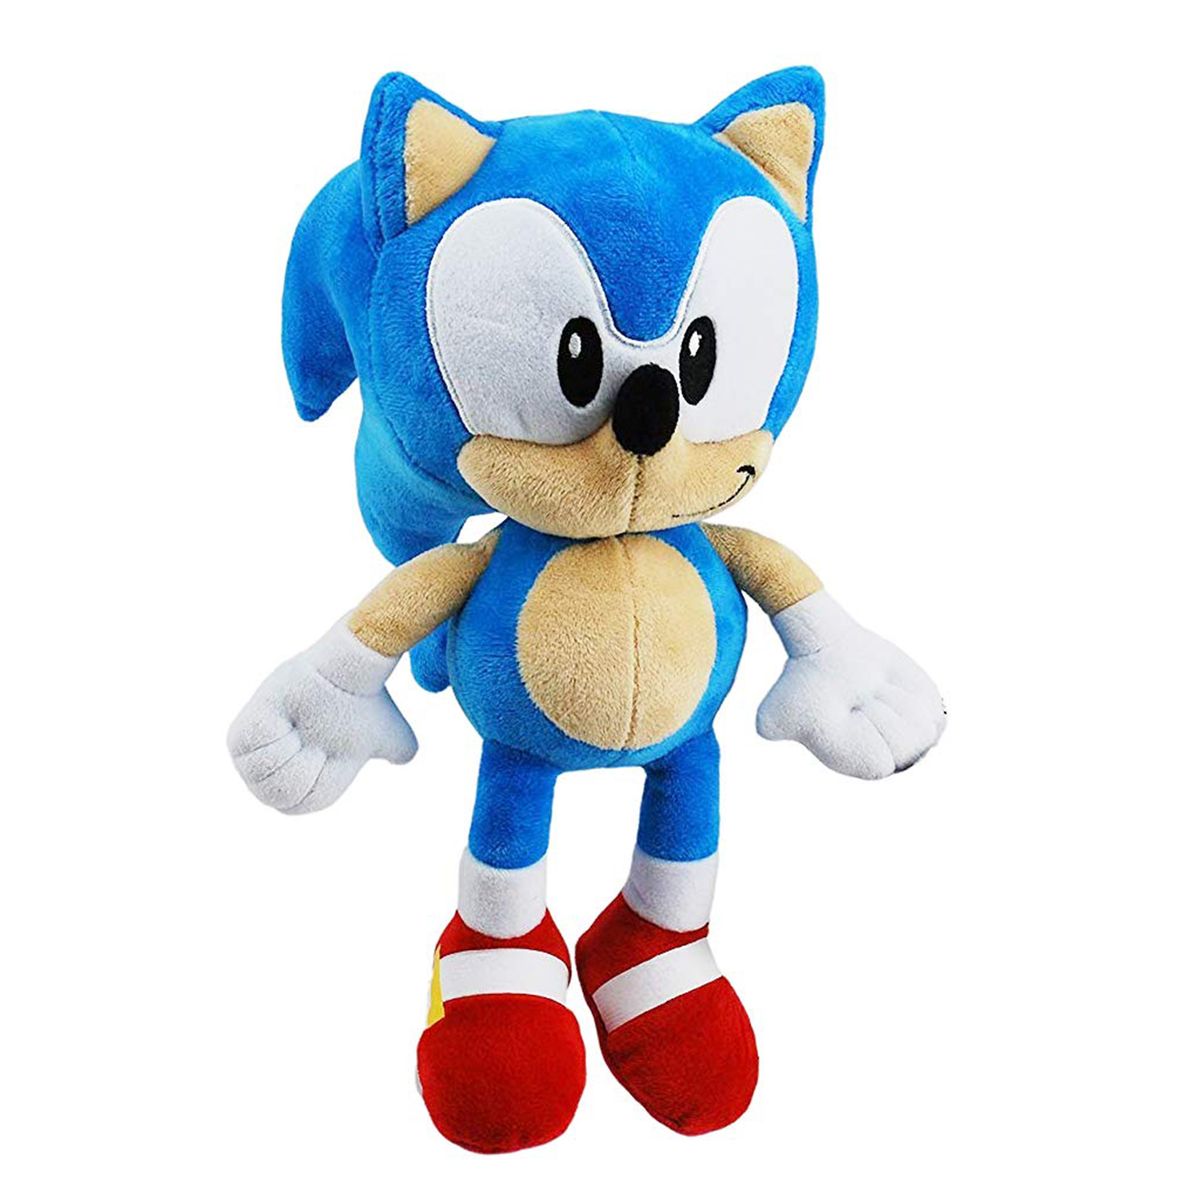 Amy Plüschtier Sonic The Hedgehog Plüsch Figur Kuscheltier Stofftier 26 cm 